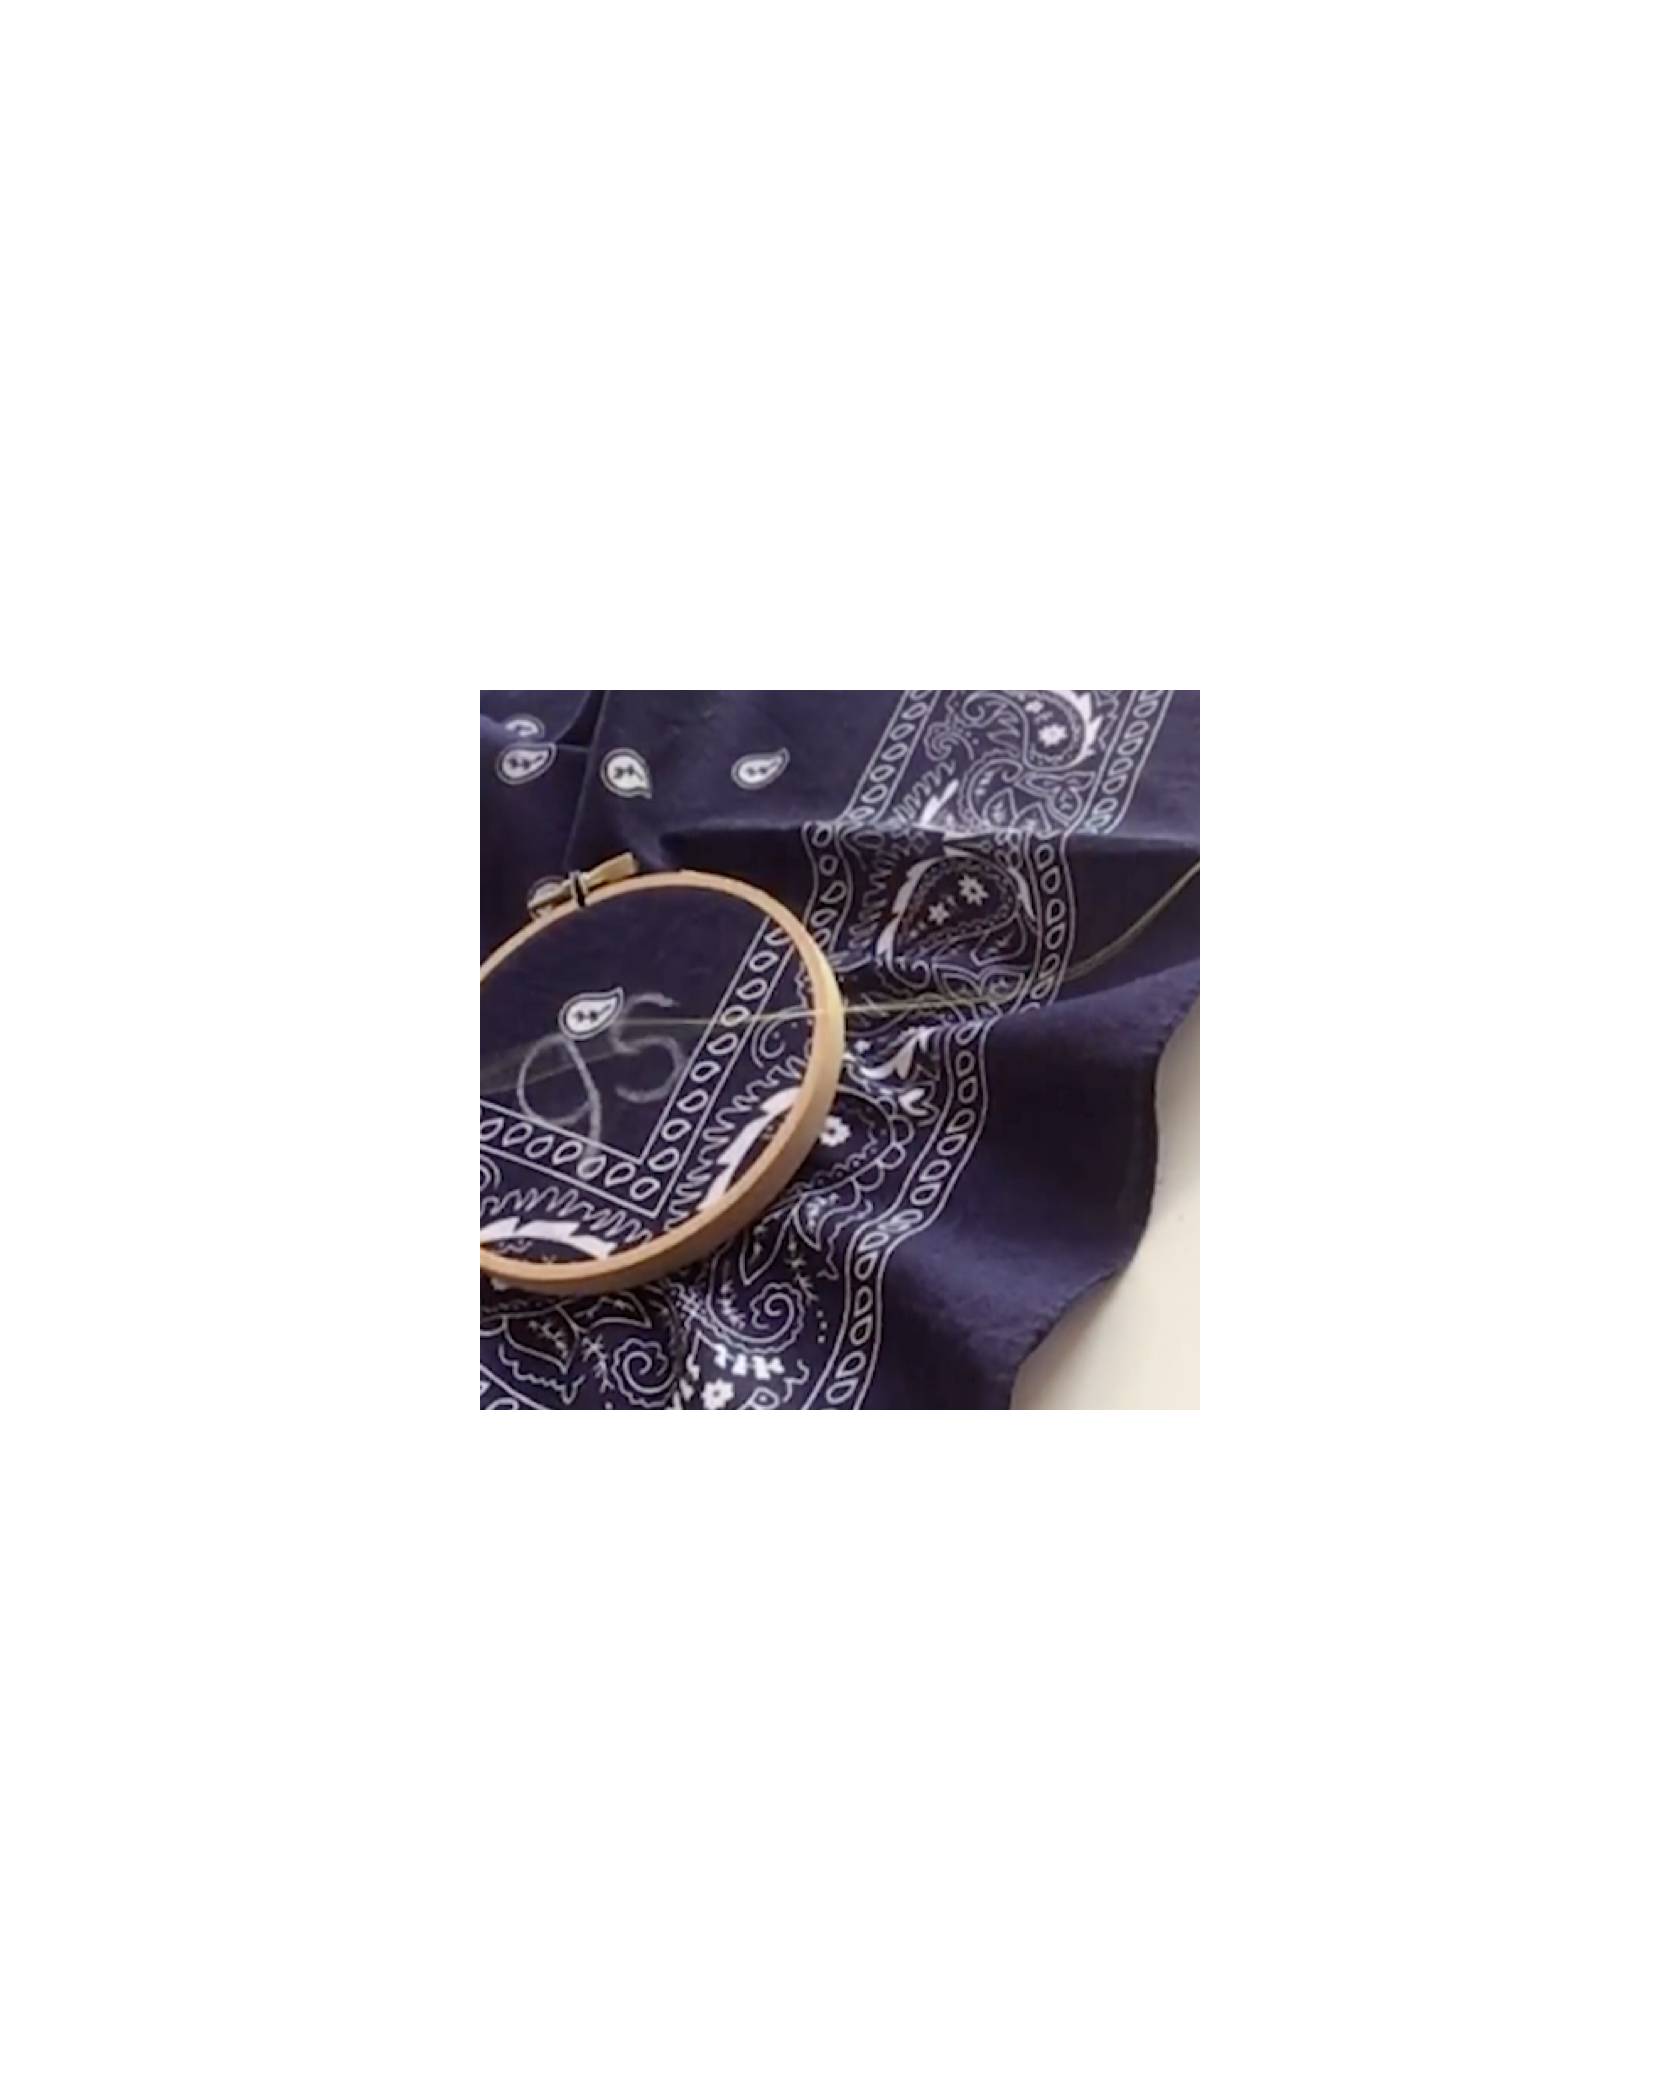 embroidery hoop on bandana